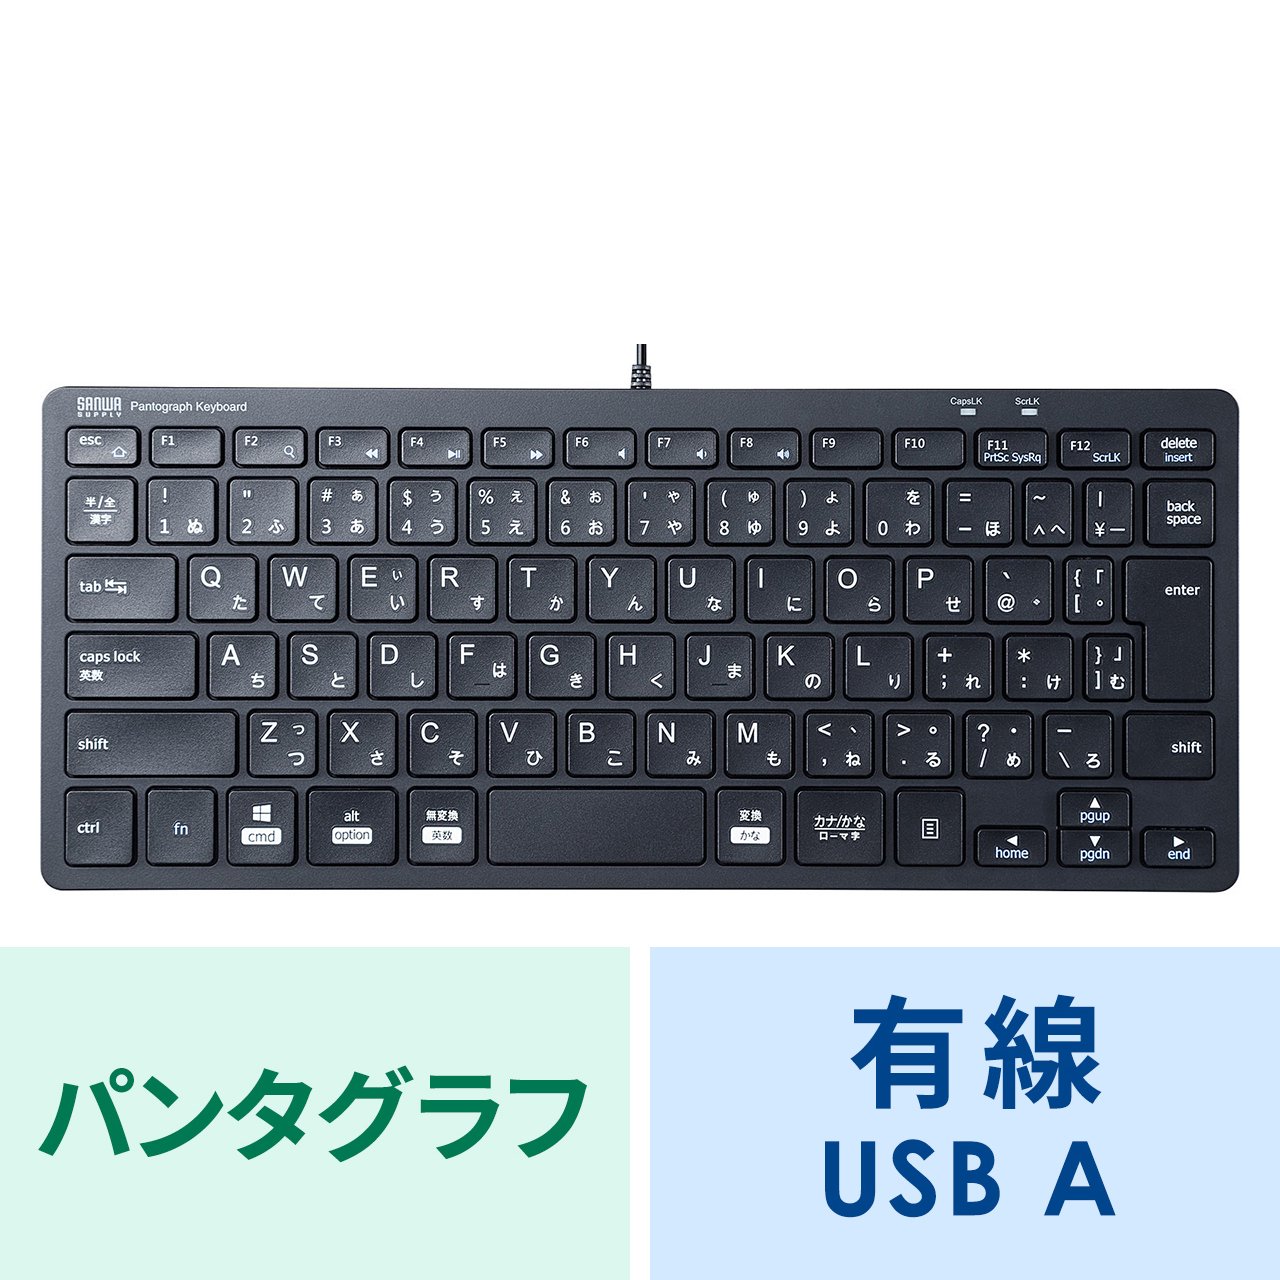 有線キーボード(USB A) テンキーなし パンタグラフ 抗菌仕様 日本語配列(JIS) ブラック SKB-SL36BK